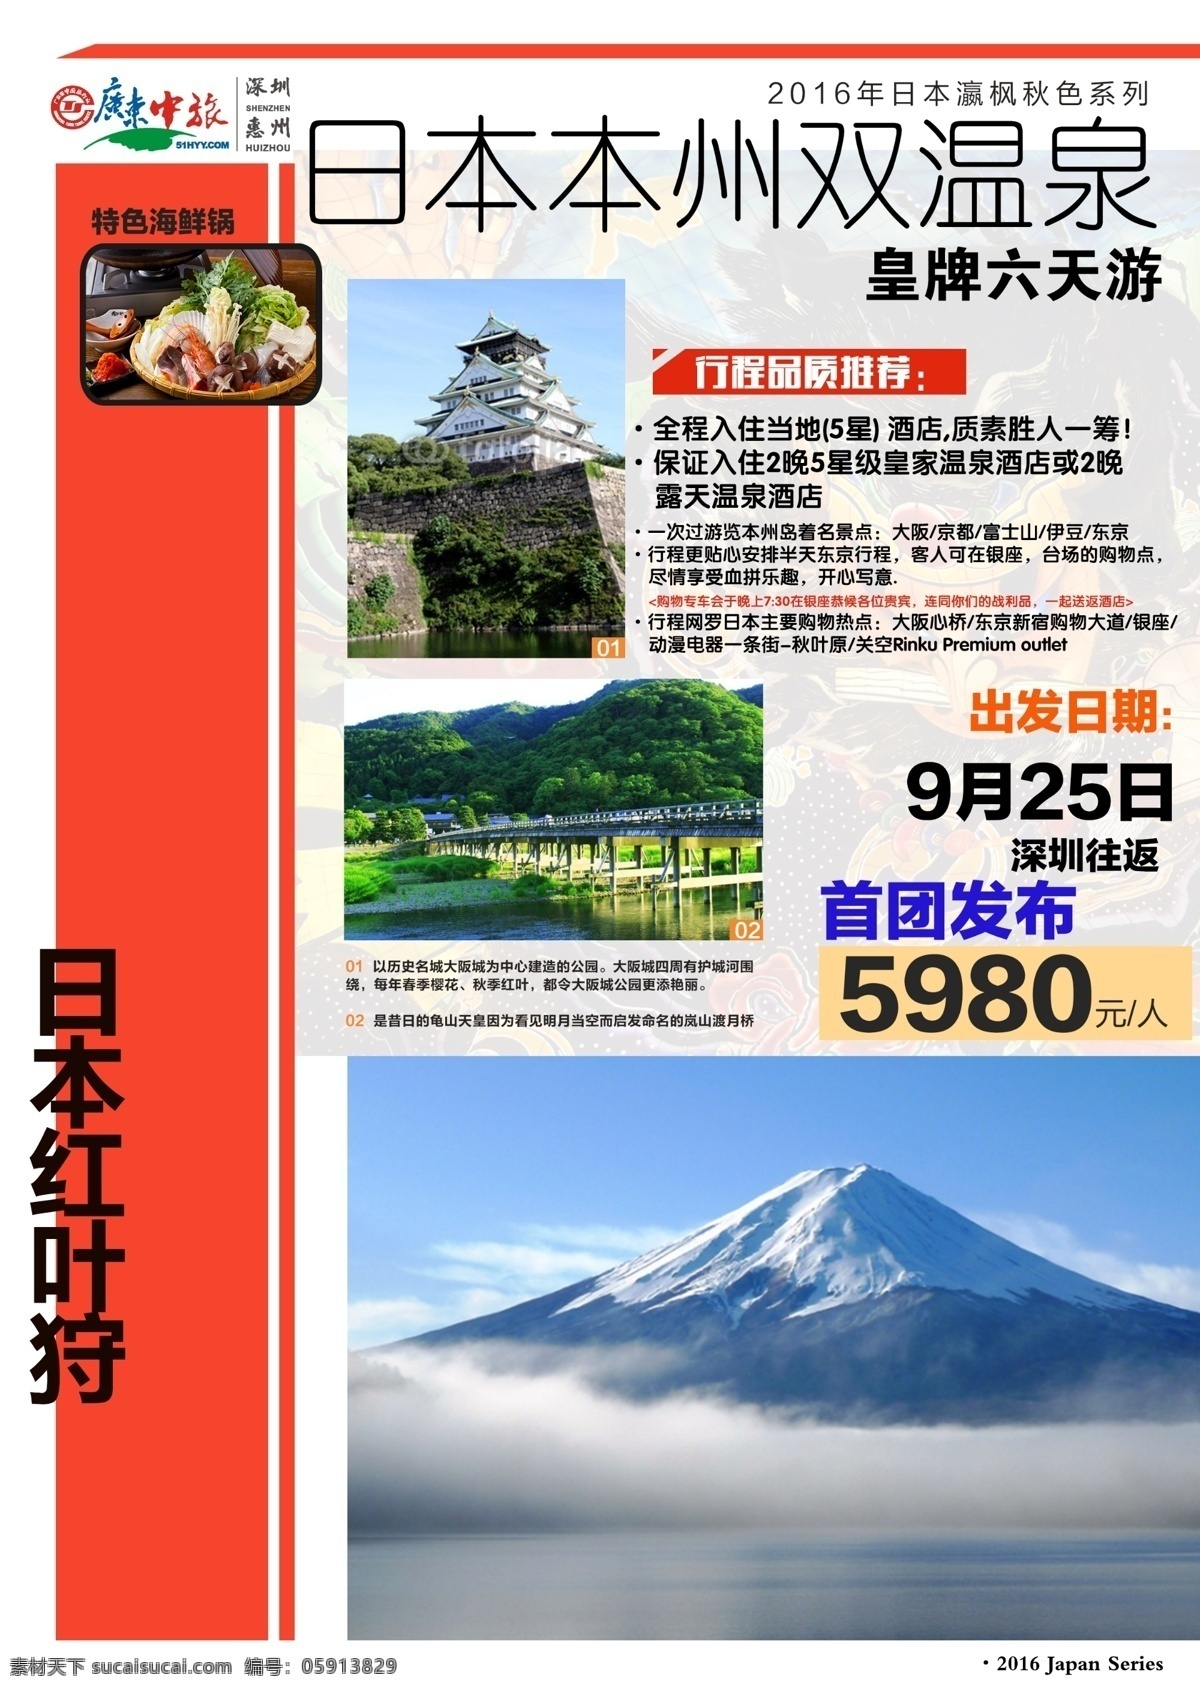 日本旅游 杂志 海报 日本 旅游 宣传图 简约